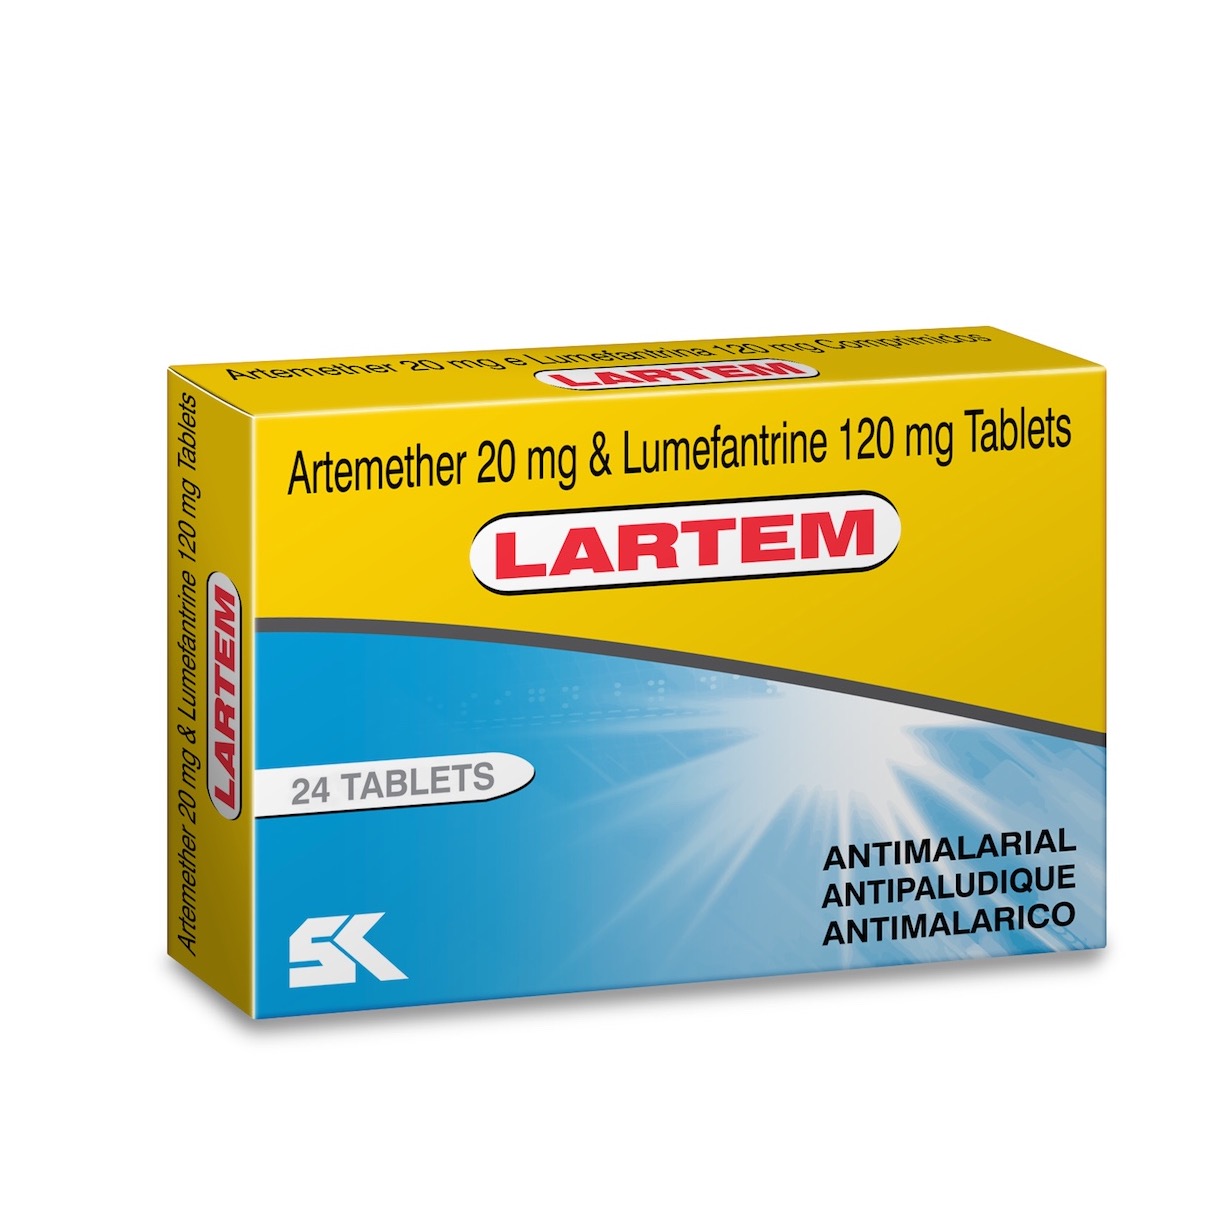 LARTEM (Artemether + Lumefantrine) Tablets, Dispersible Tablets, Suspension